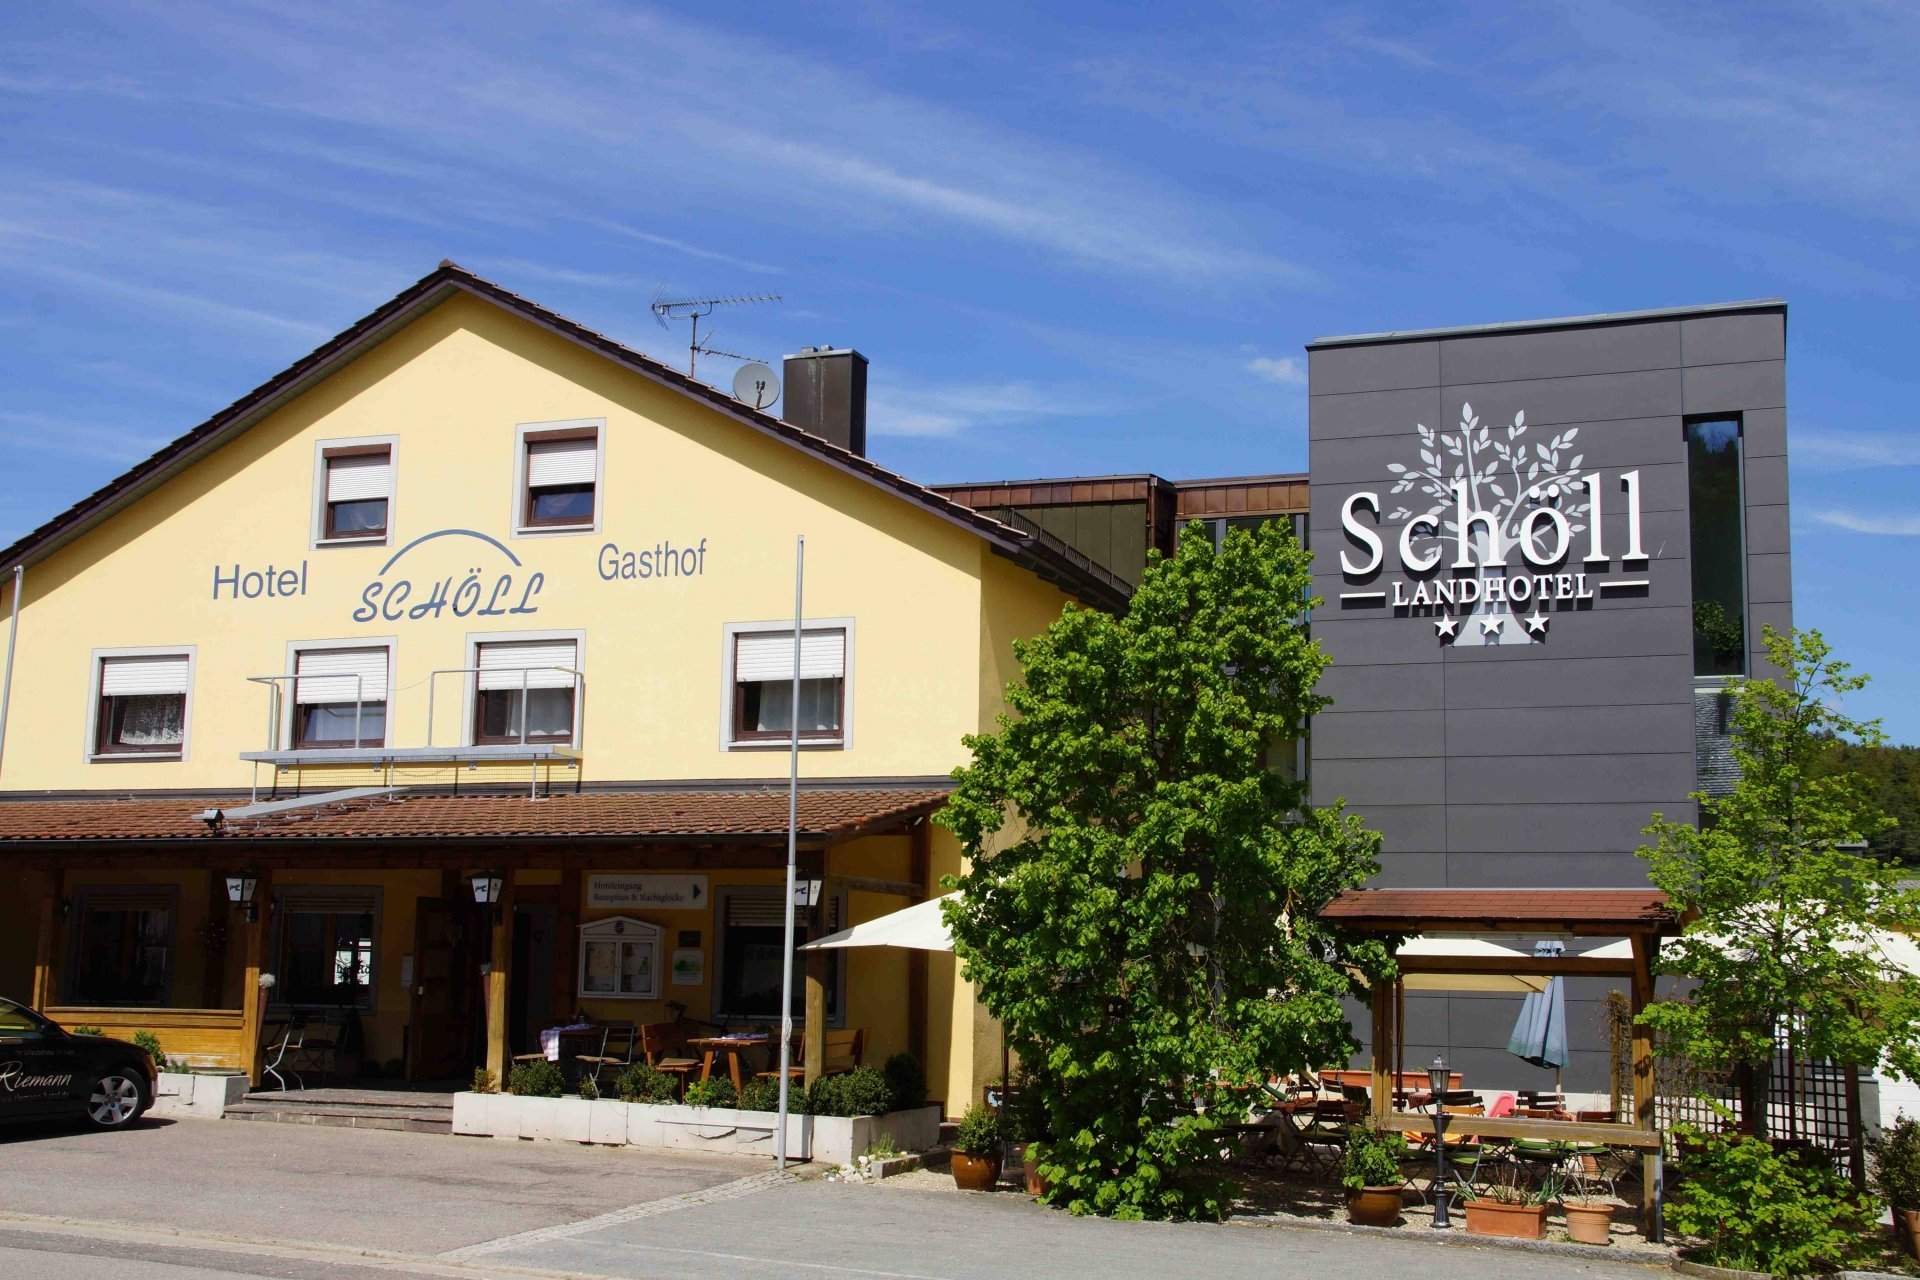 3 Tage Bayerische Auszeit mit Alpaka Wanderung in der Oberpfalz 2 – LandKomforthotel Schöll (3 Sterne) in Parsberg, Bayern inkl. Halbpension